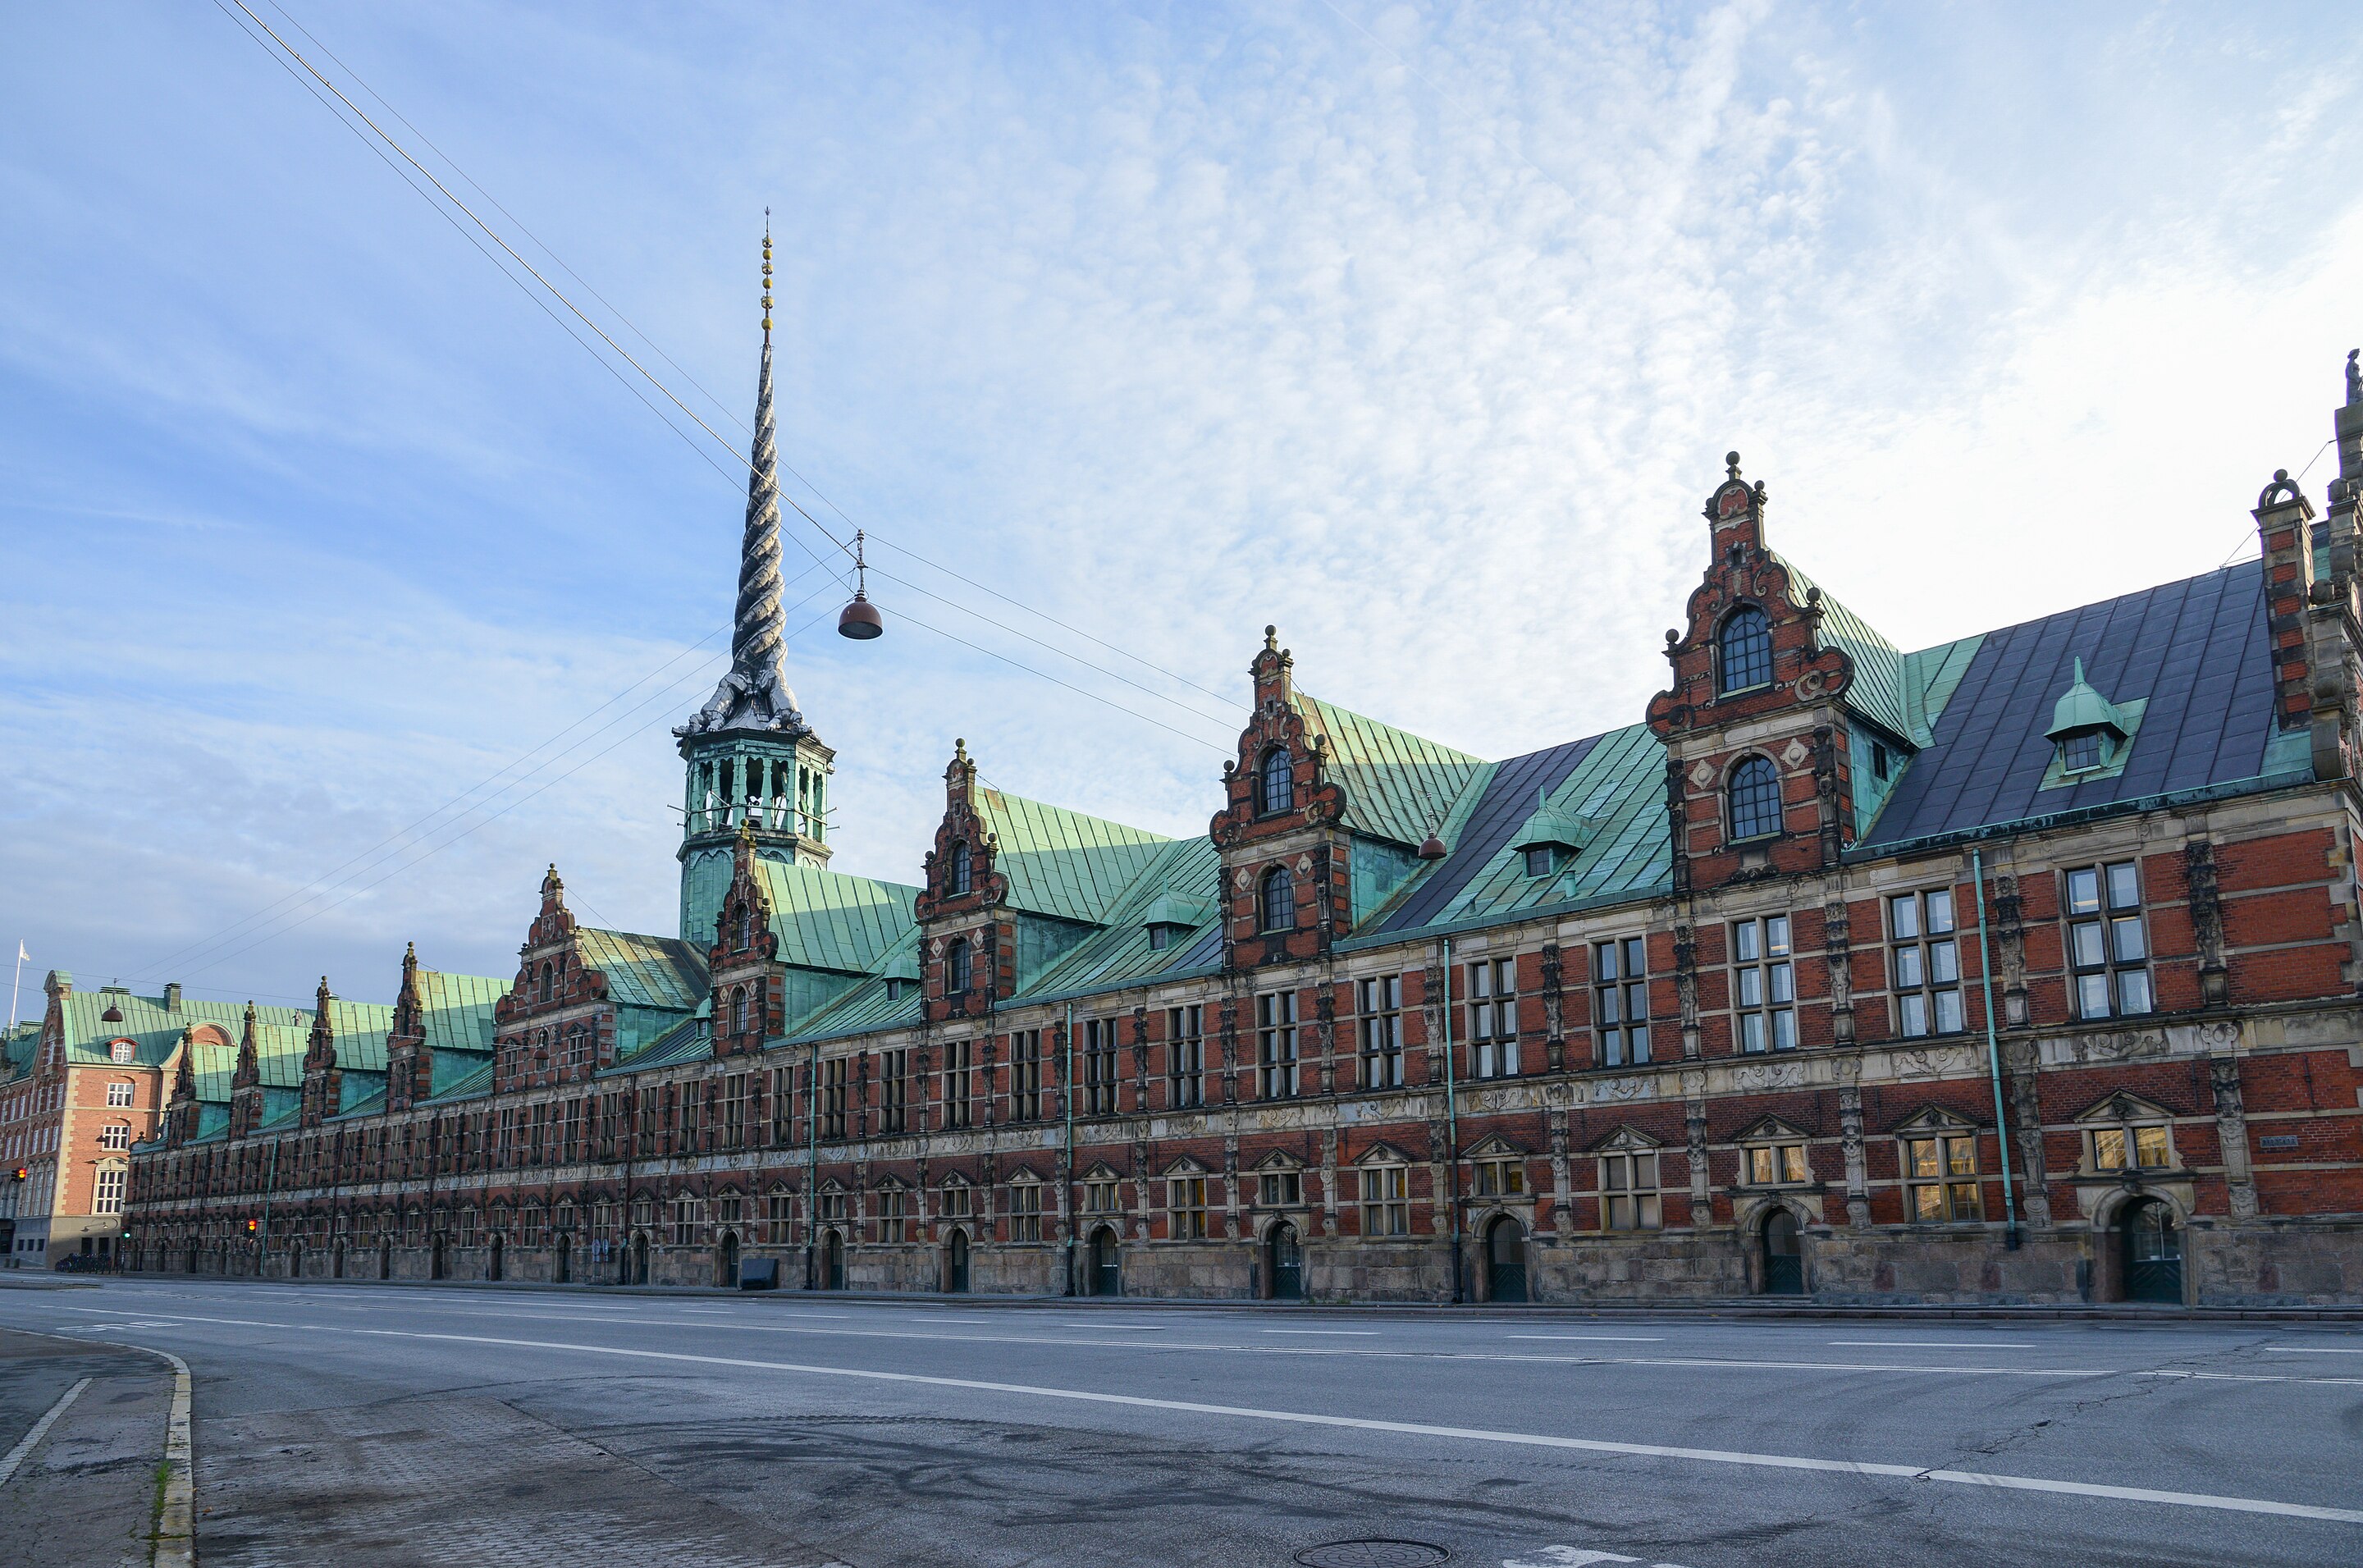 Старая фондовая&nbsp;биржа (B&oslash;rsbygningen)&nbsp;в Копенгагене, Дания.&nbsp;29 октября 2014 года.&nbsp;В этом здании до 1974 года размещалась Копенгагенская фондовая биржа&nbsp;&nbsp;